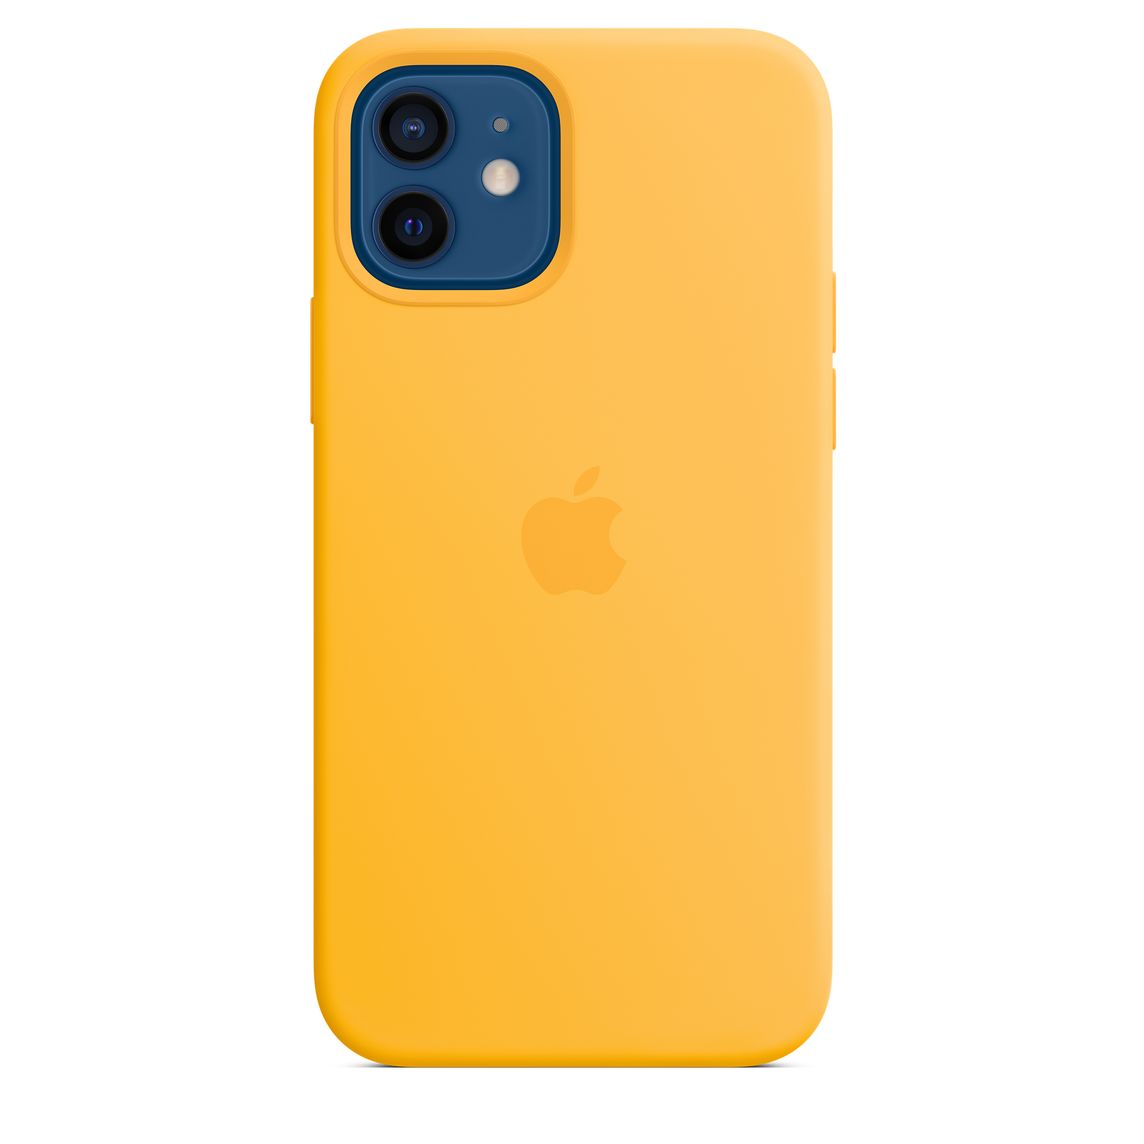 Фото — Чехол Apple MagSafe для iPhone 12/12 Pro, cиликон, ярко-желтый